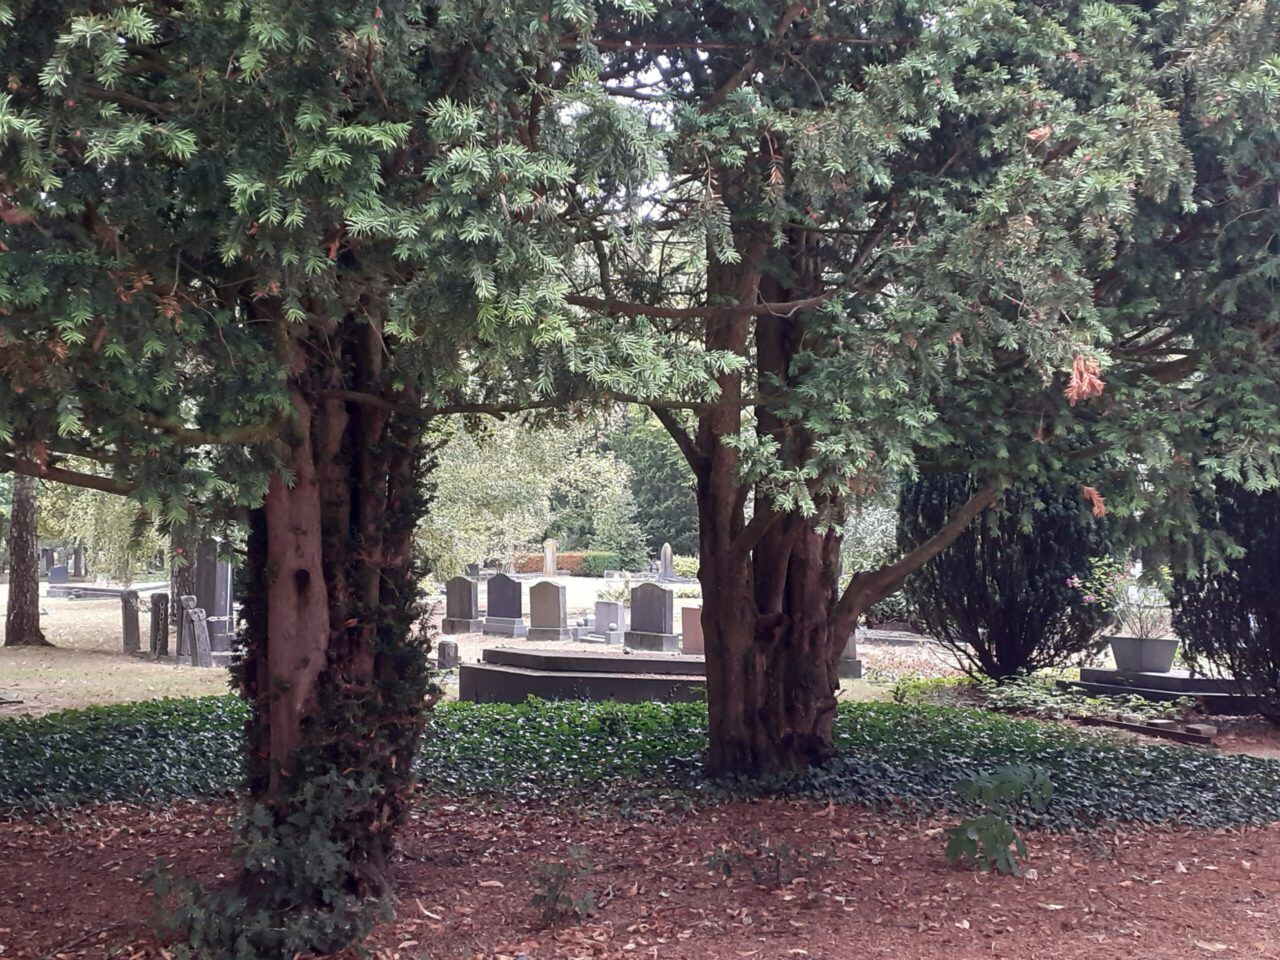 Oude Begraafplaats Zutphen algemene begraafplaats begraven afscheid nemen uitvaart Zutphen